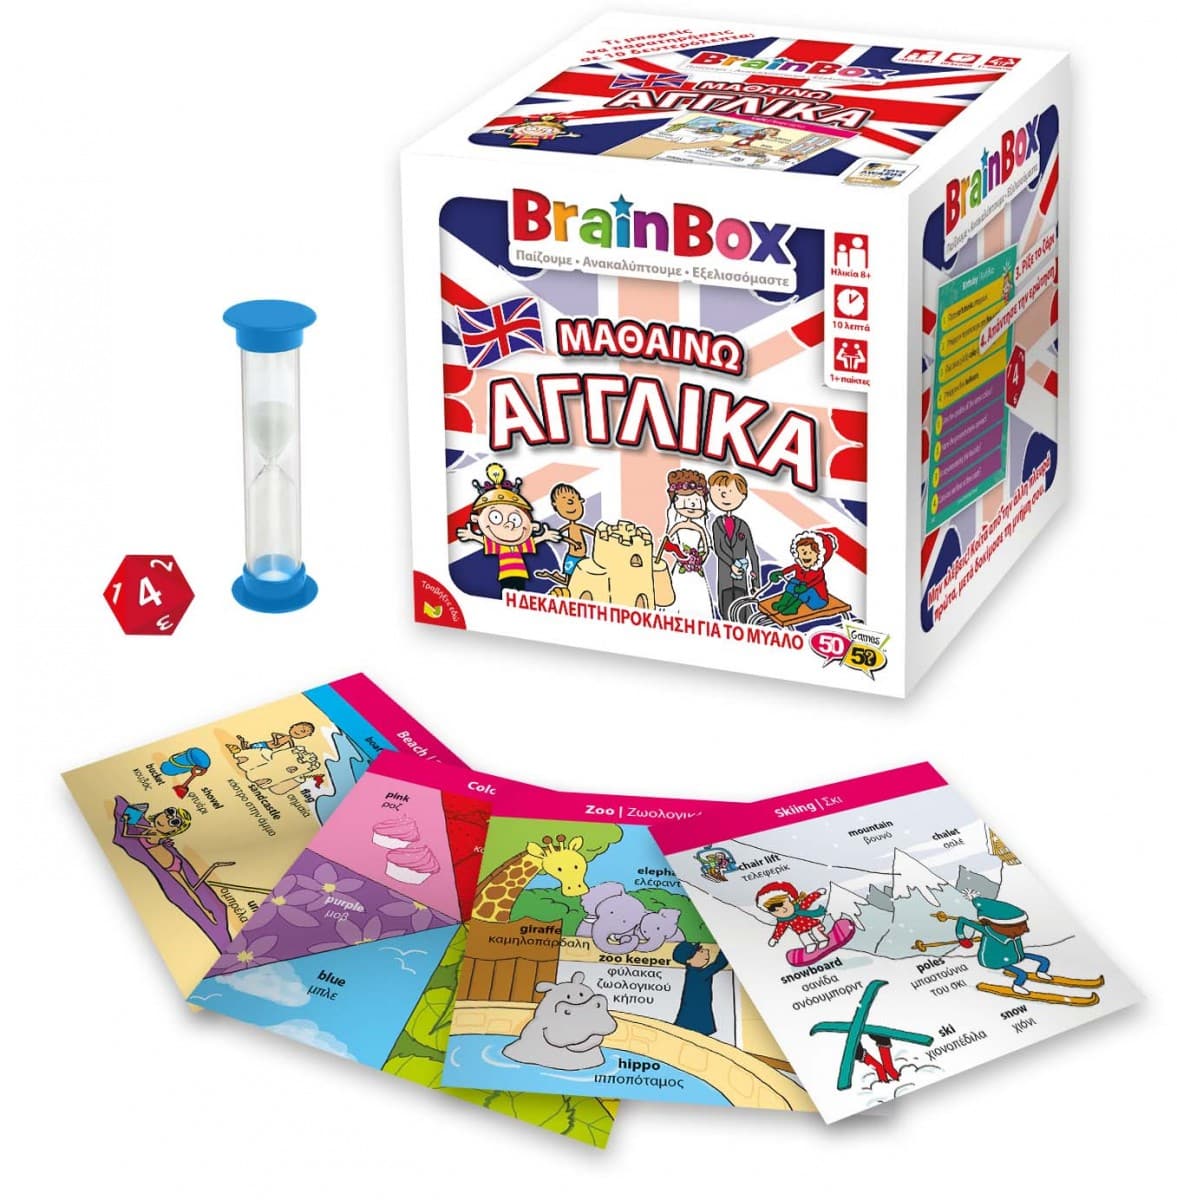 Brainbox Μαθαινω Αγγλικα Επιτραπεζιο Παιχνιδι